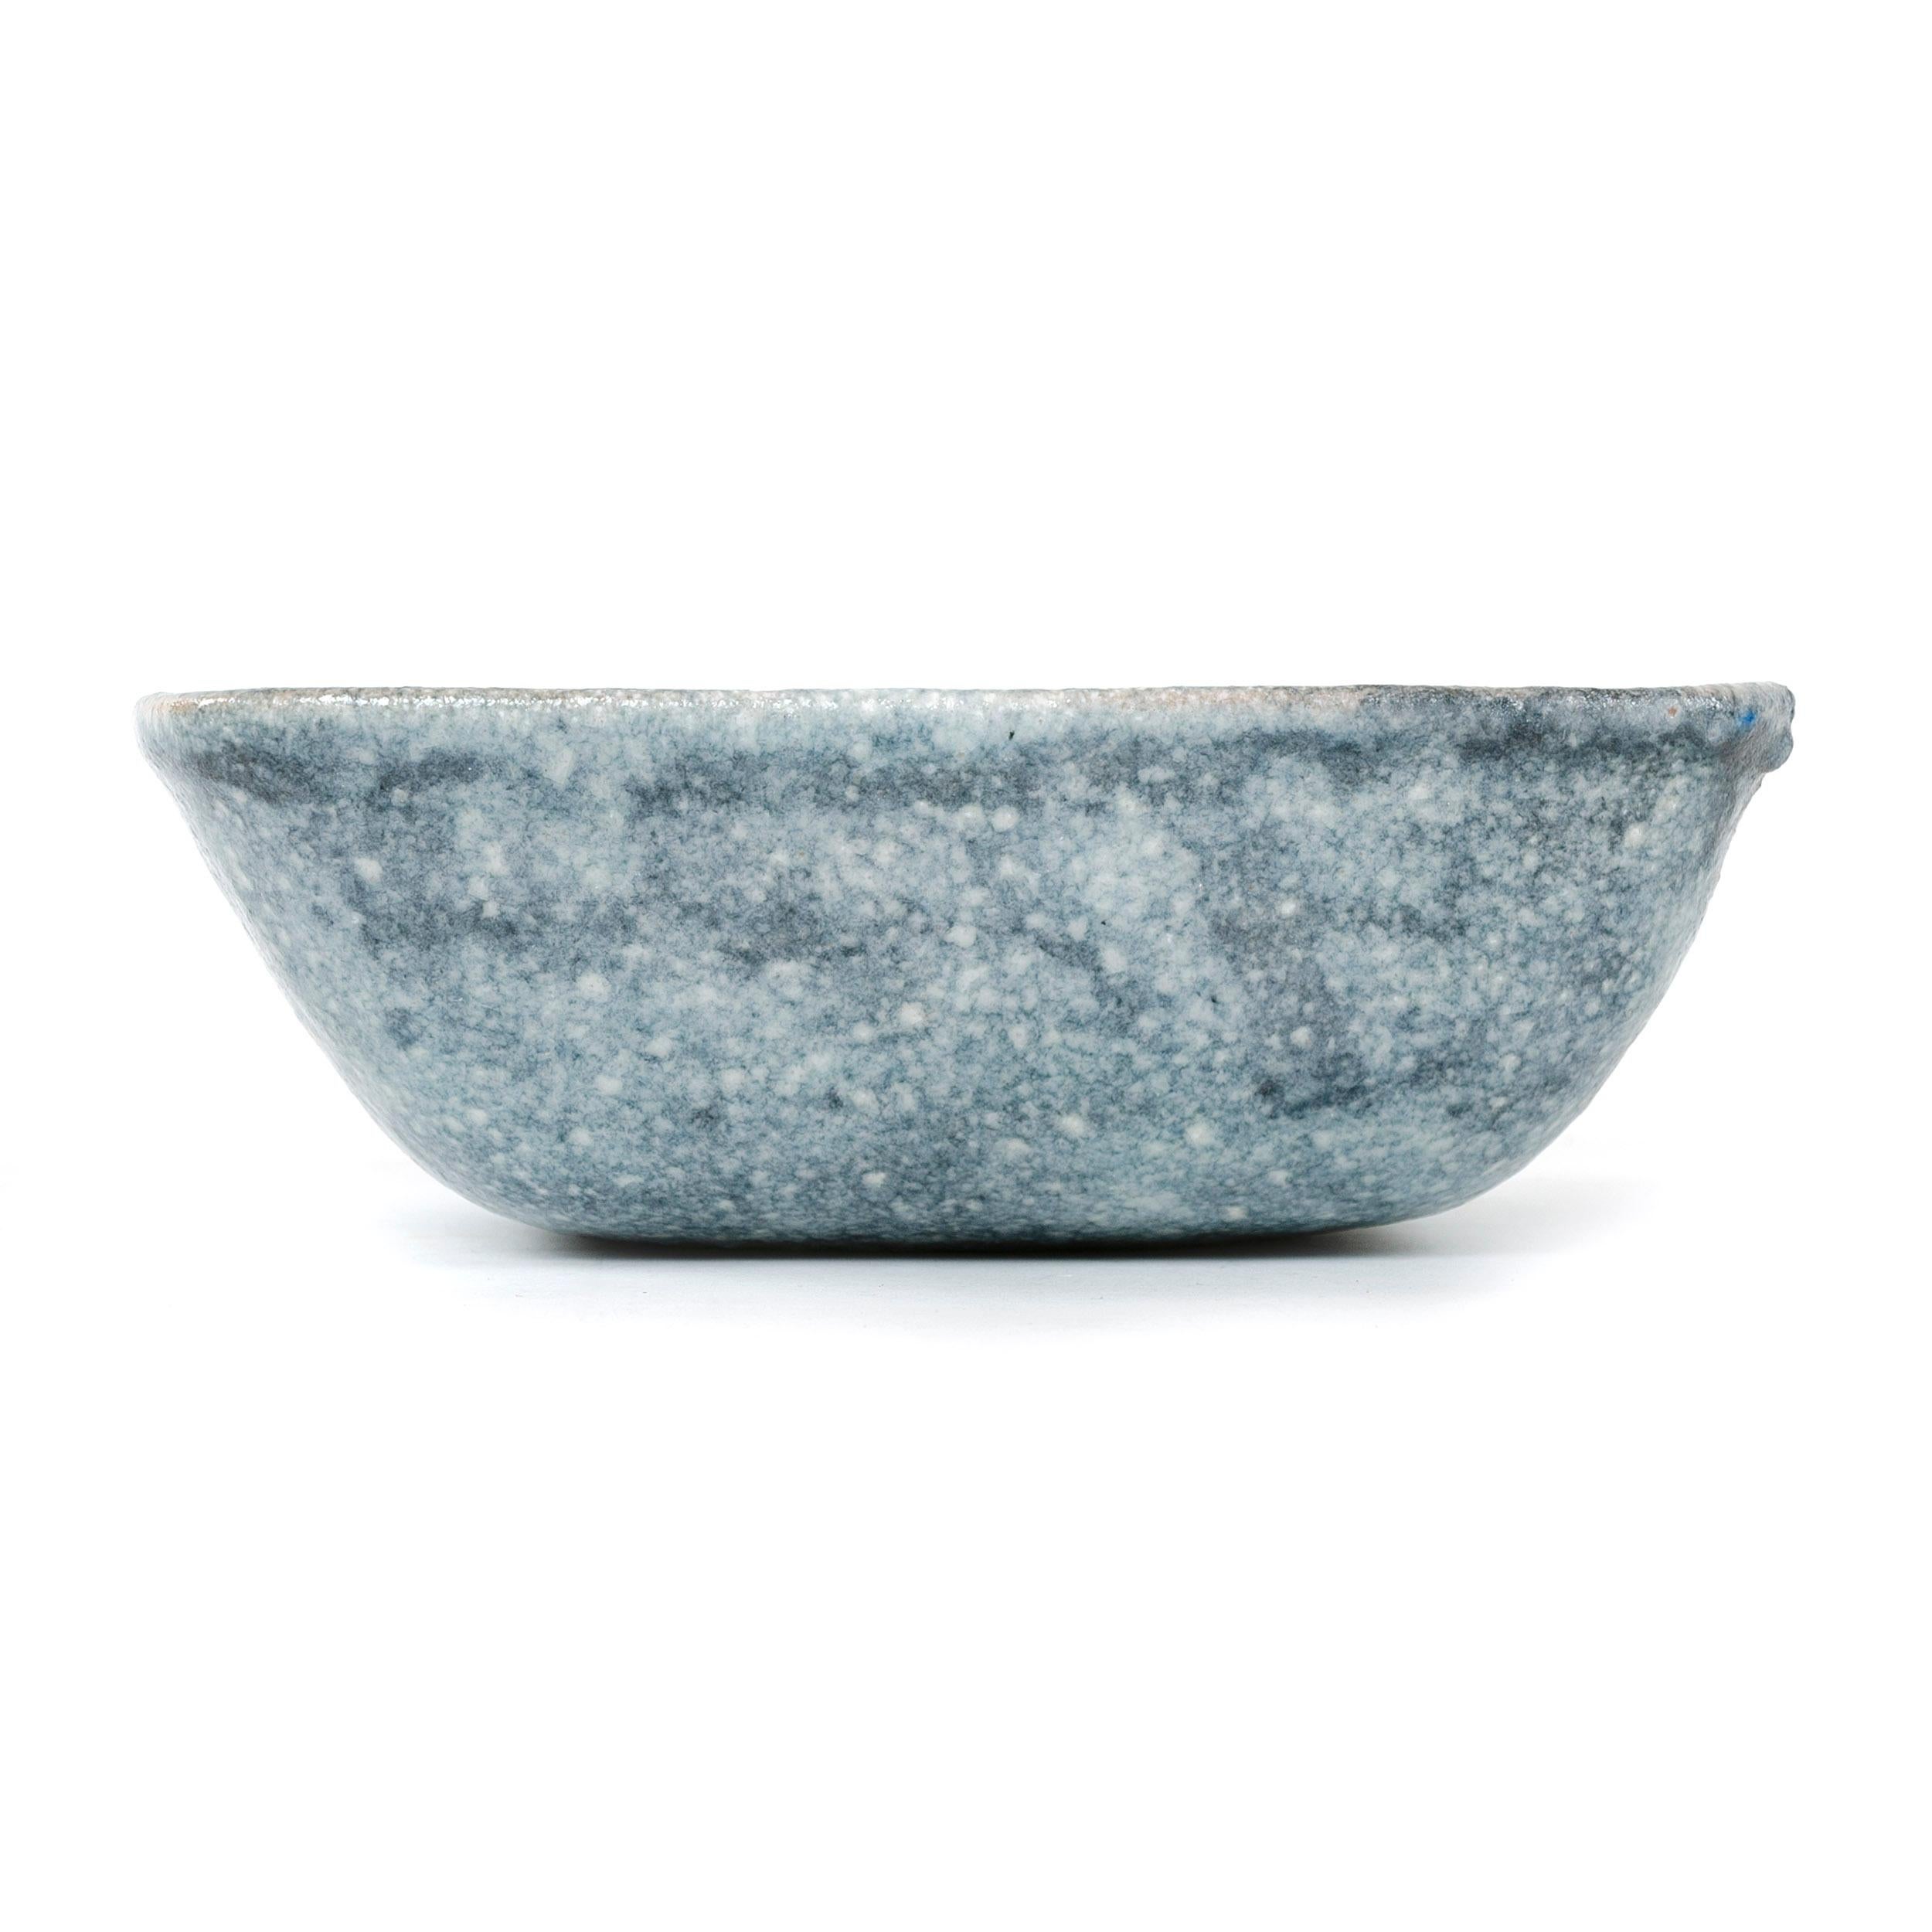 Italian 1950s Ceramic Bowl by Guido Gambone